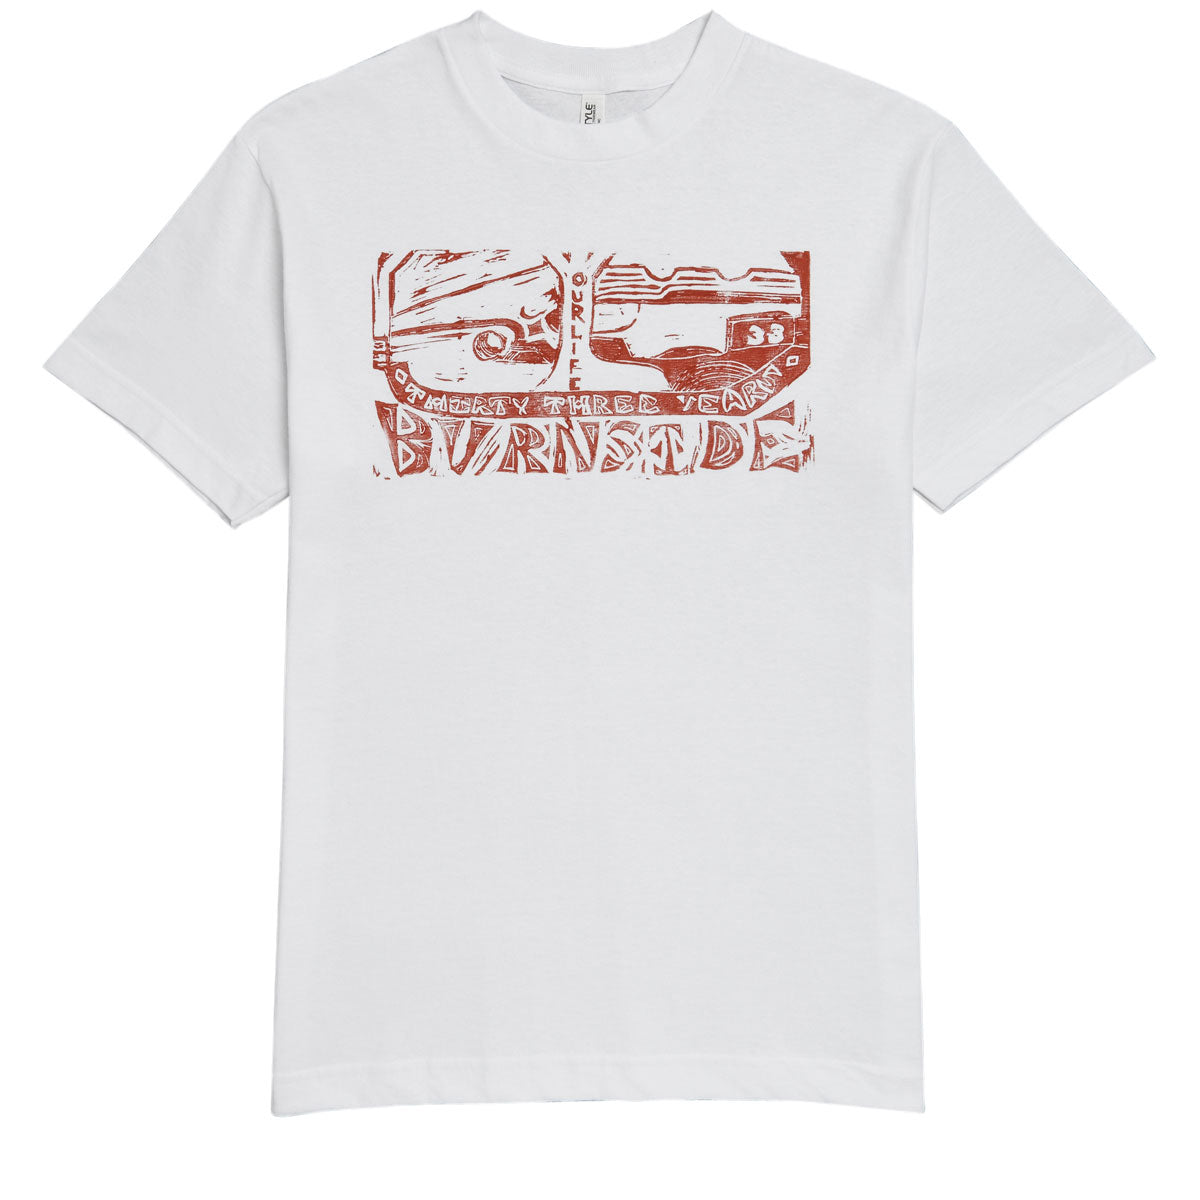 Burnside 33 Year Lino Block Print T-Shirt - White/Red image 1